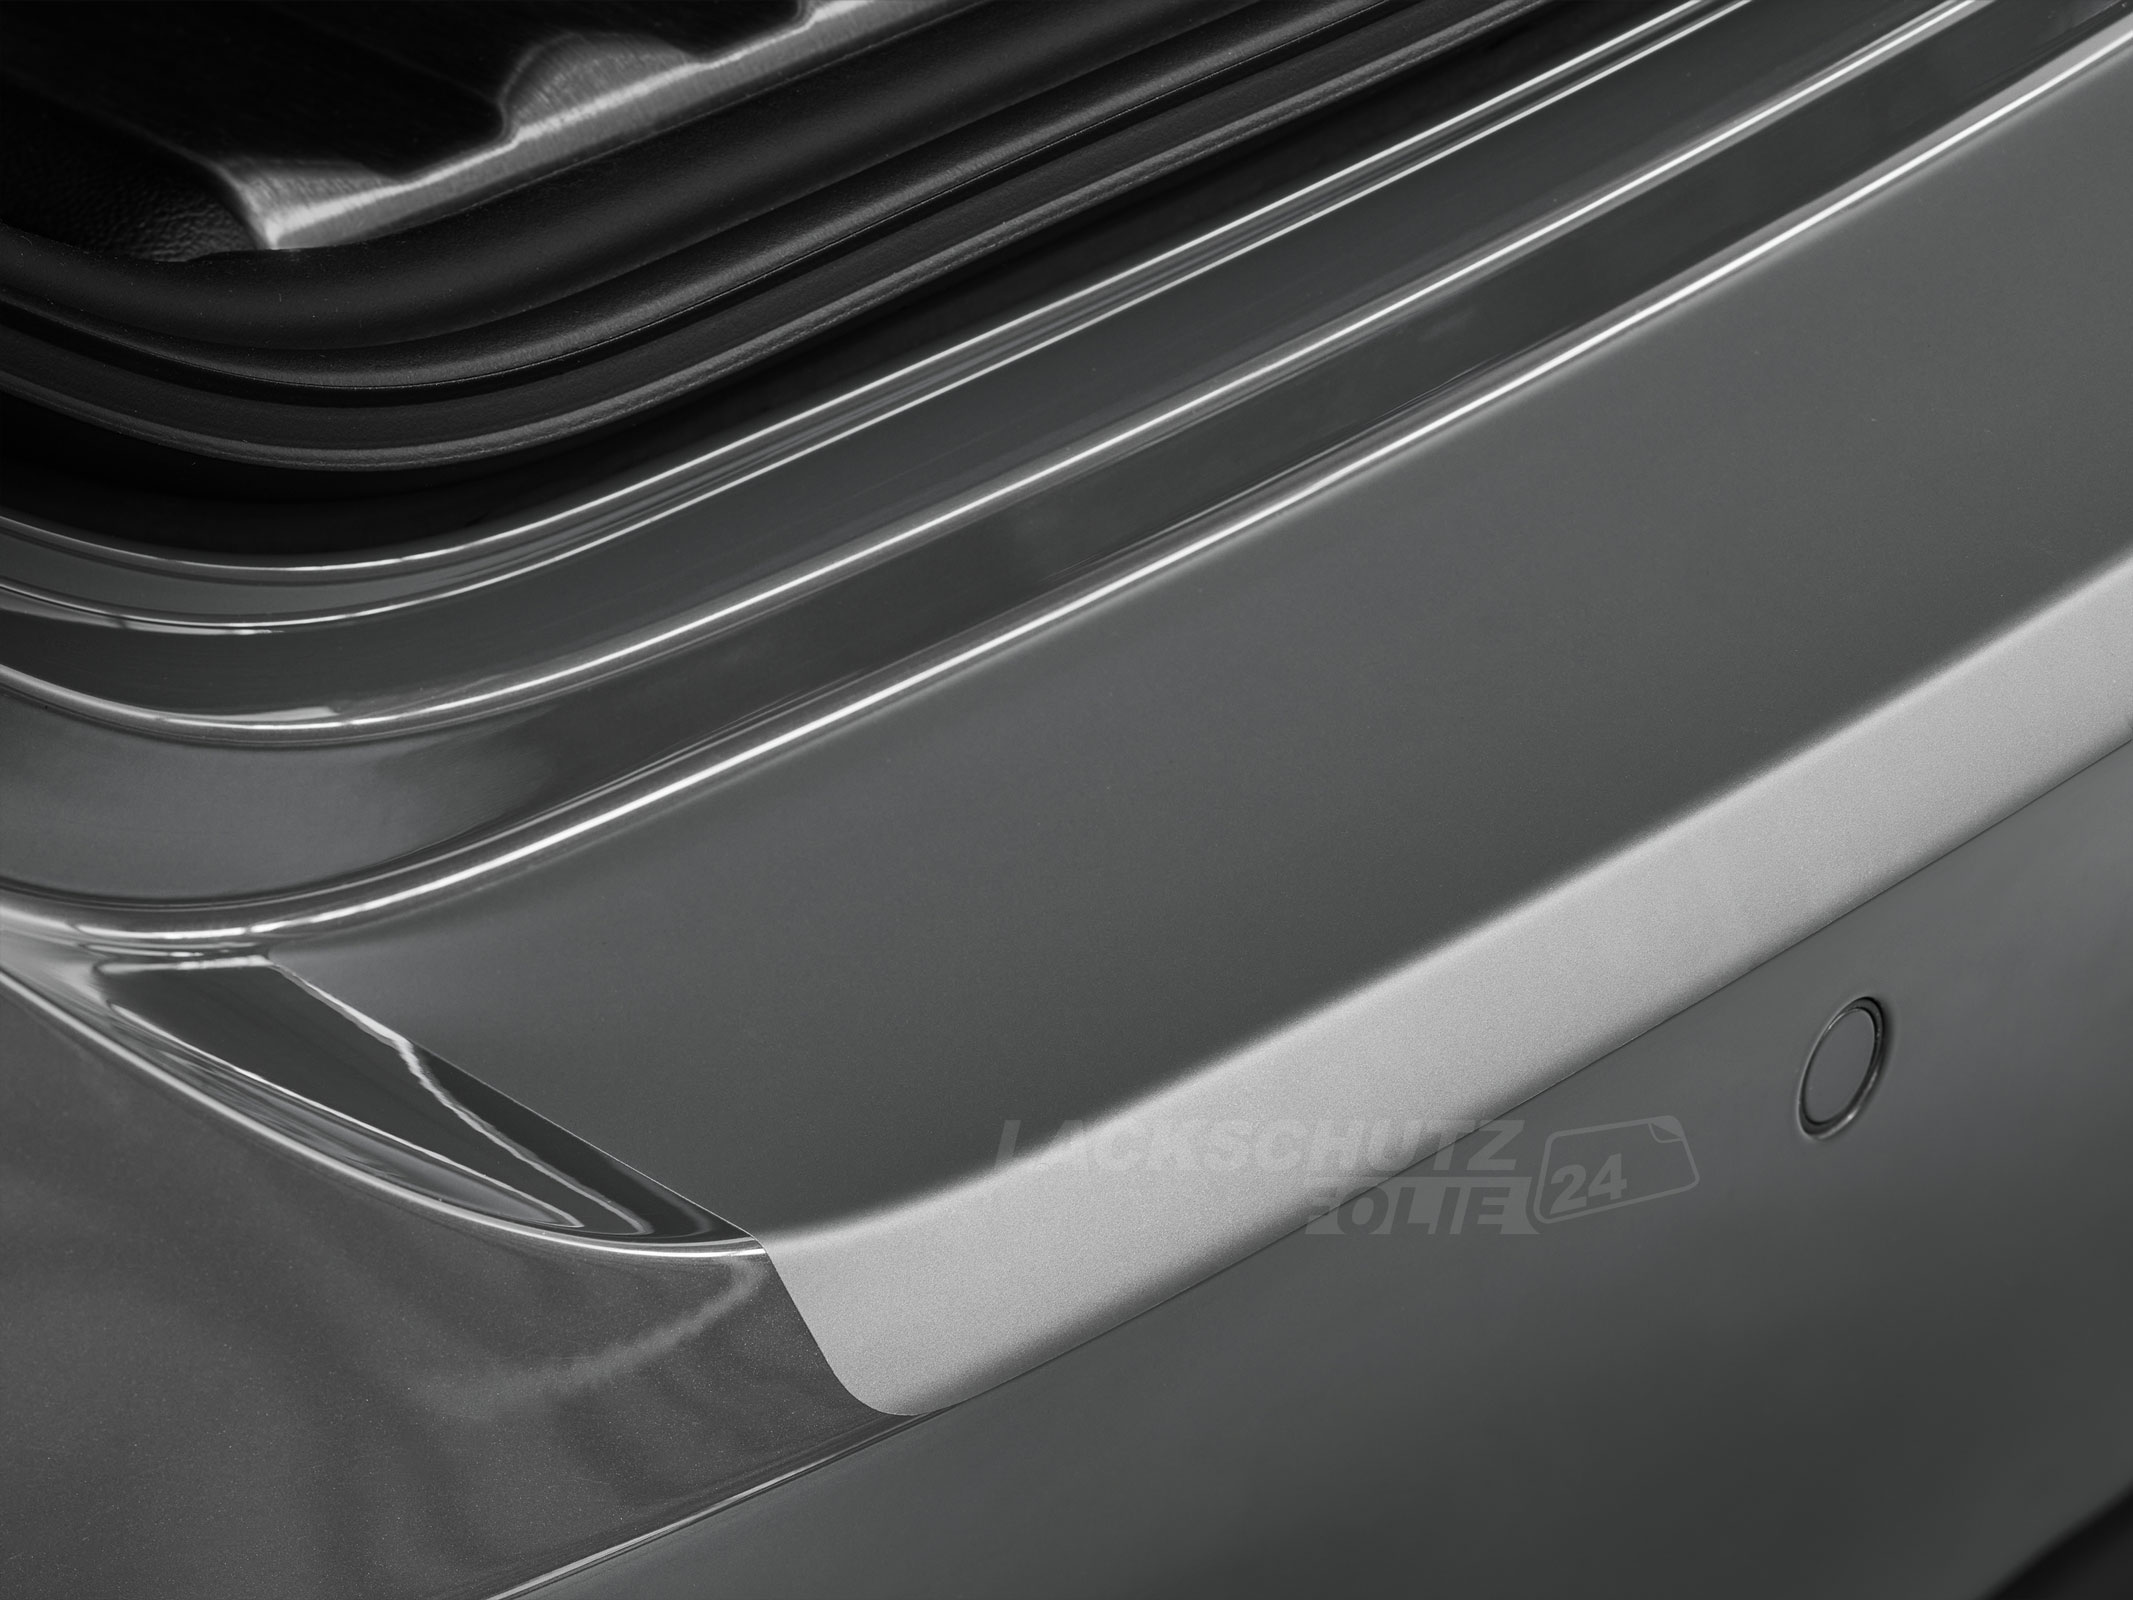 Ladekantenschutzfolie - Transparent Glatt MATT für Audi A6 Limousine C7, Typ 4G, inkl. Facelift, BJ 10/2011-2018